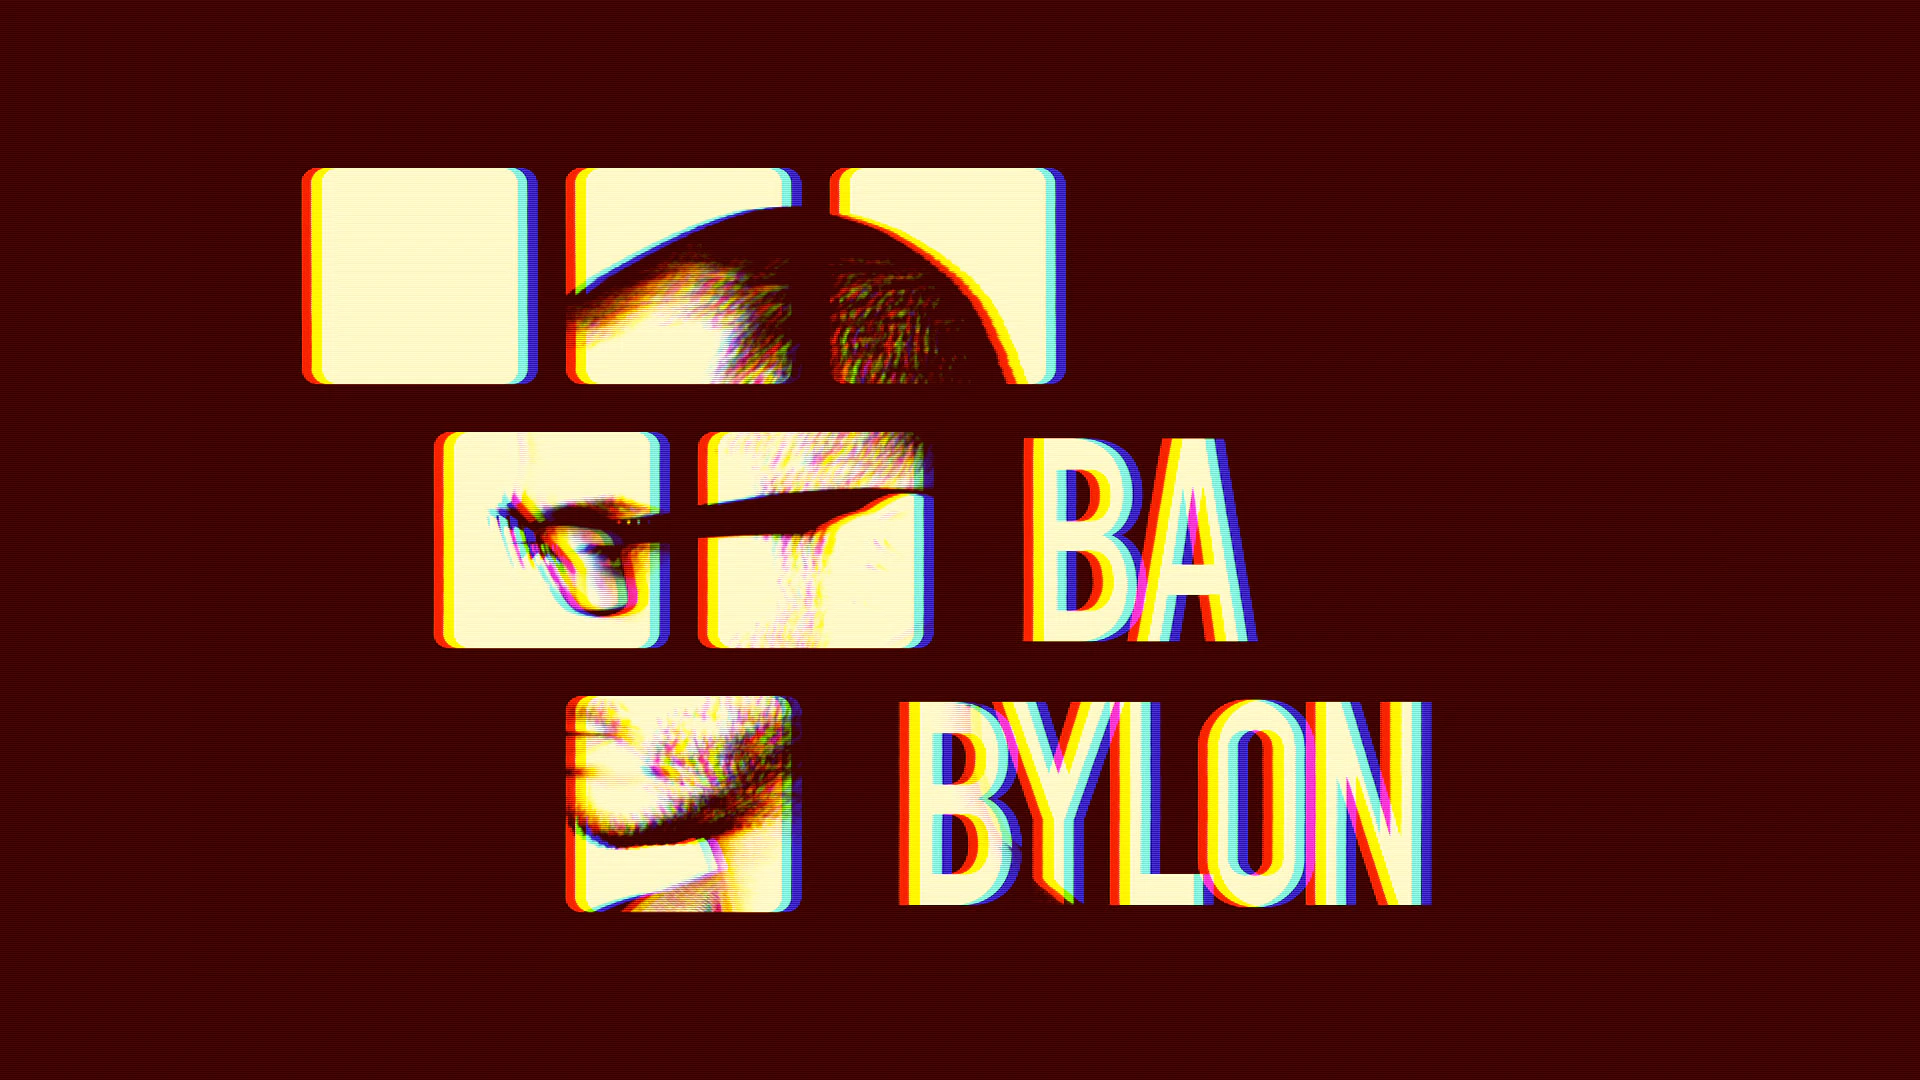 Music Video: Babylon